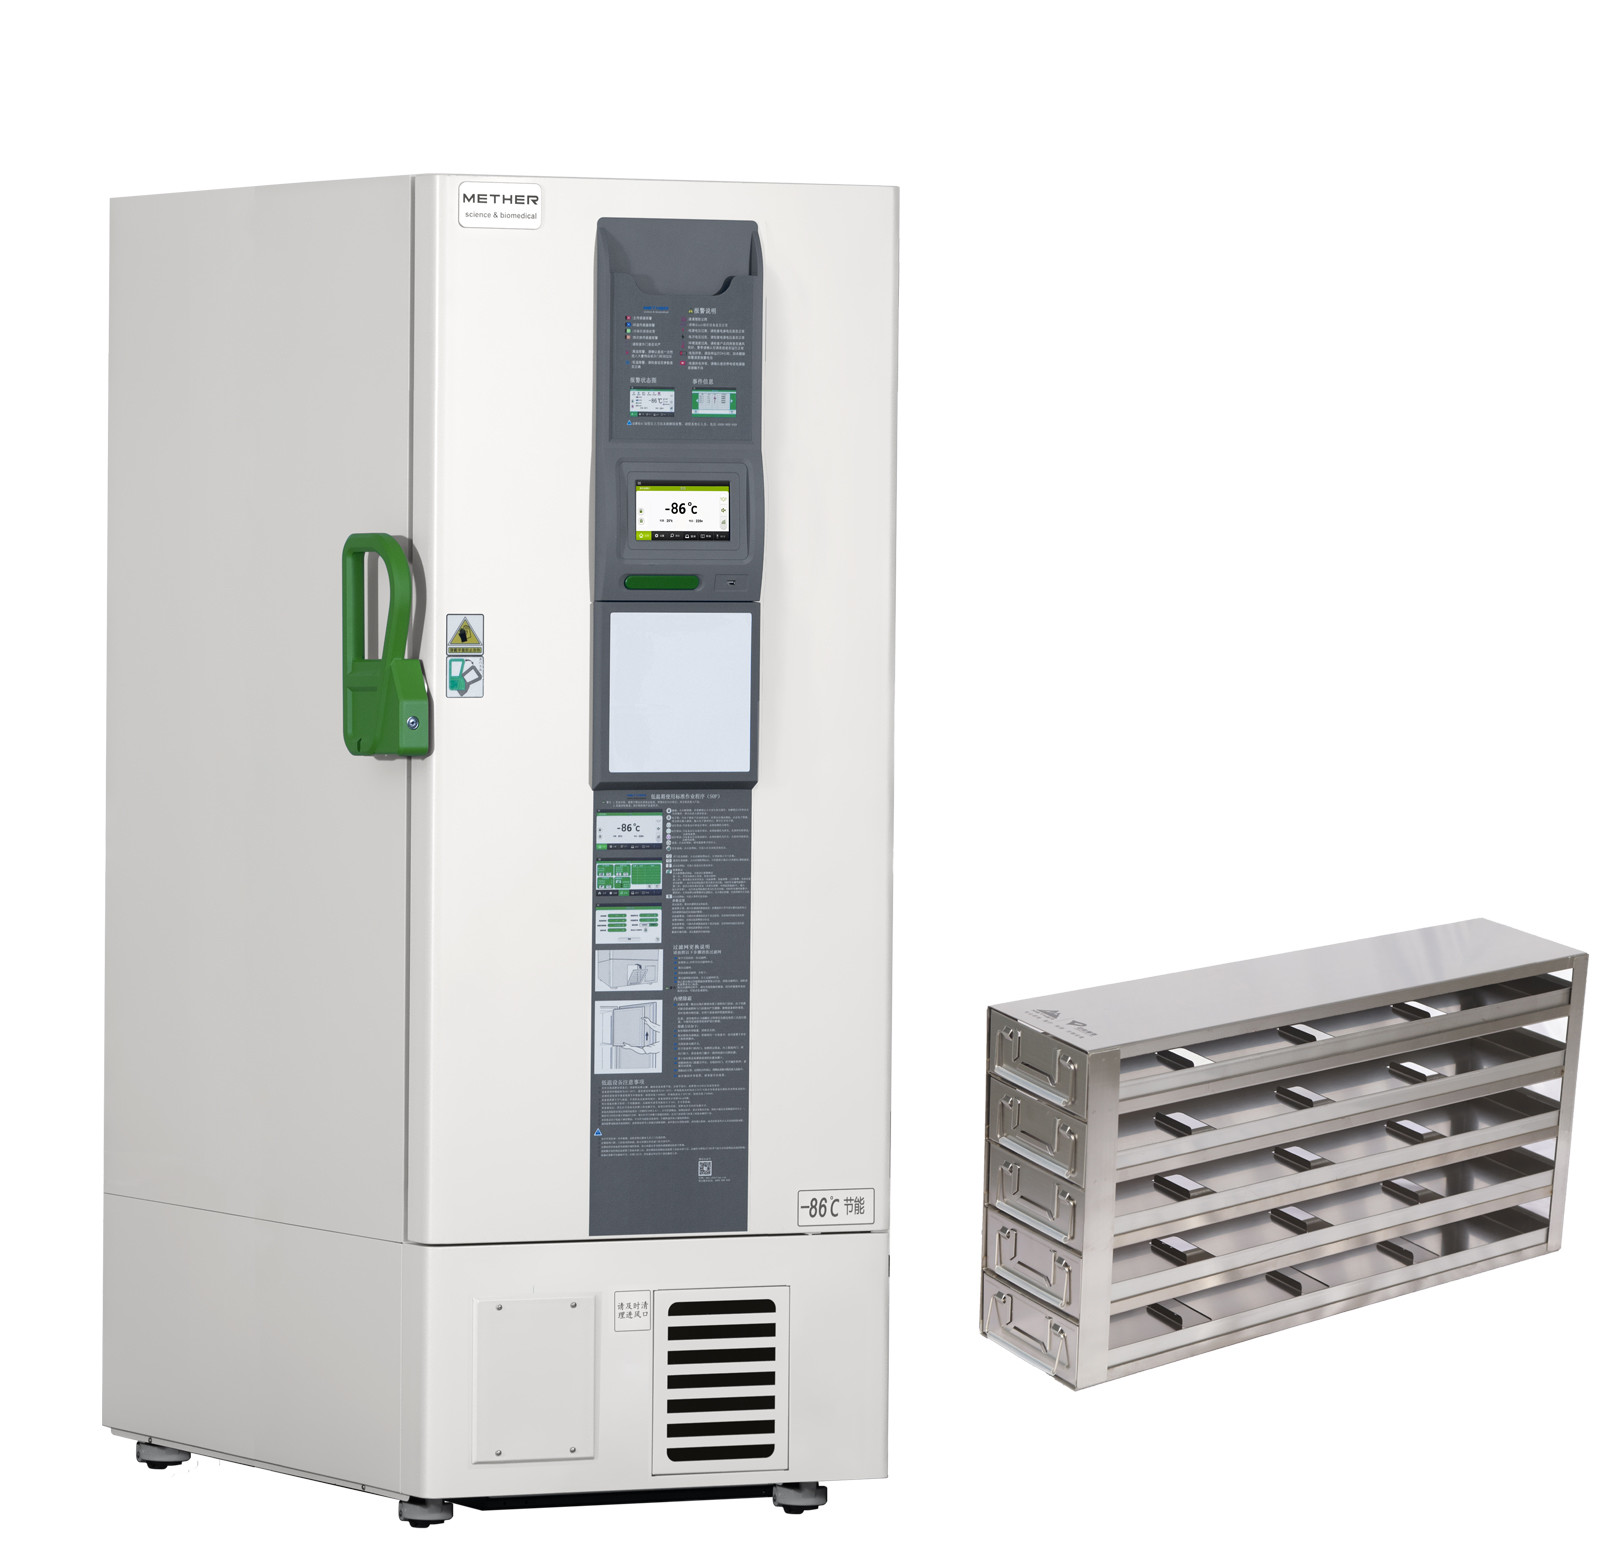 Minus 86°C Ultra Low Temperature Refrigerator For Vaccine Storage